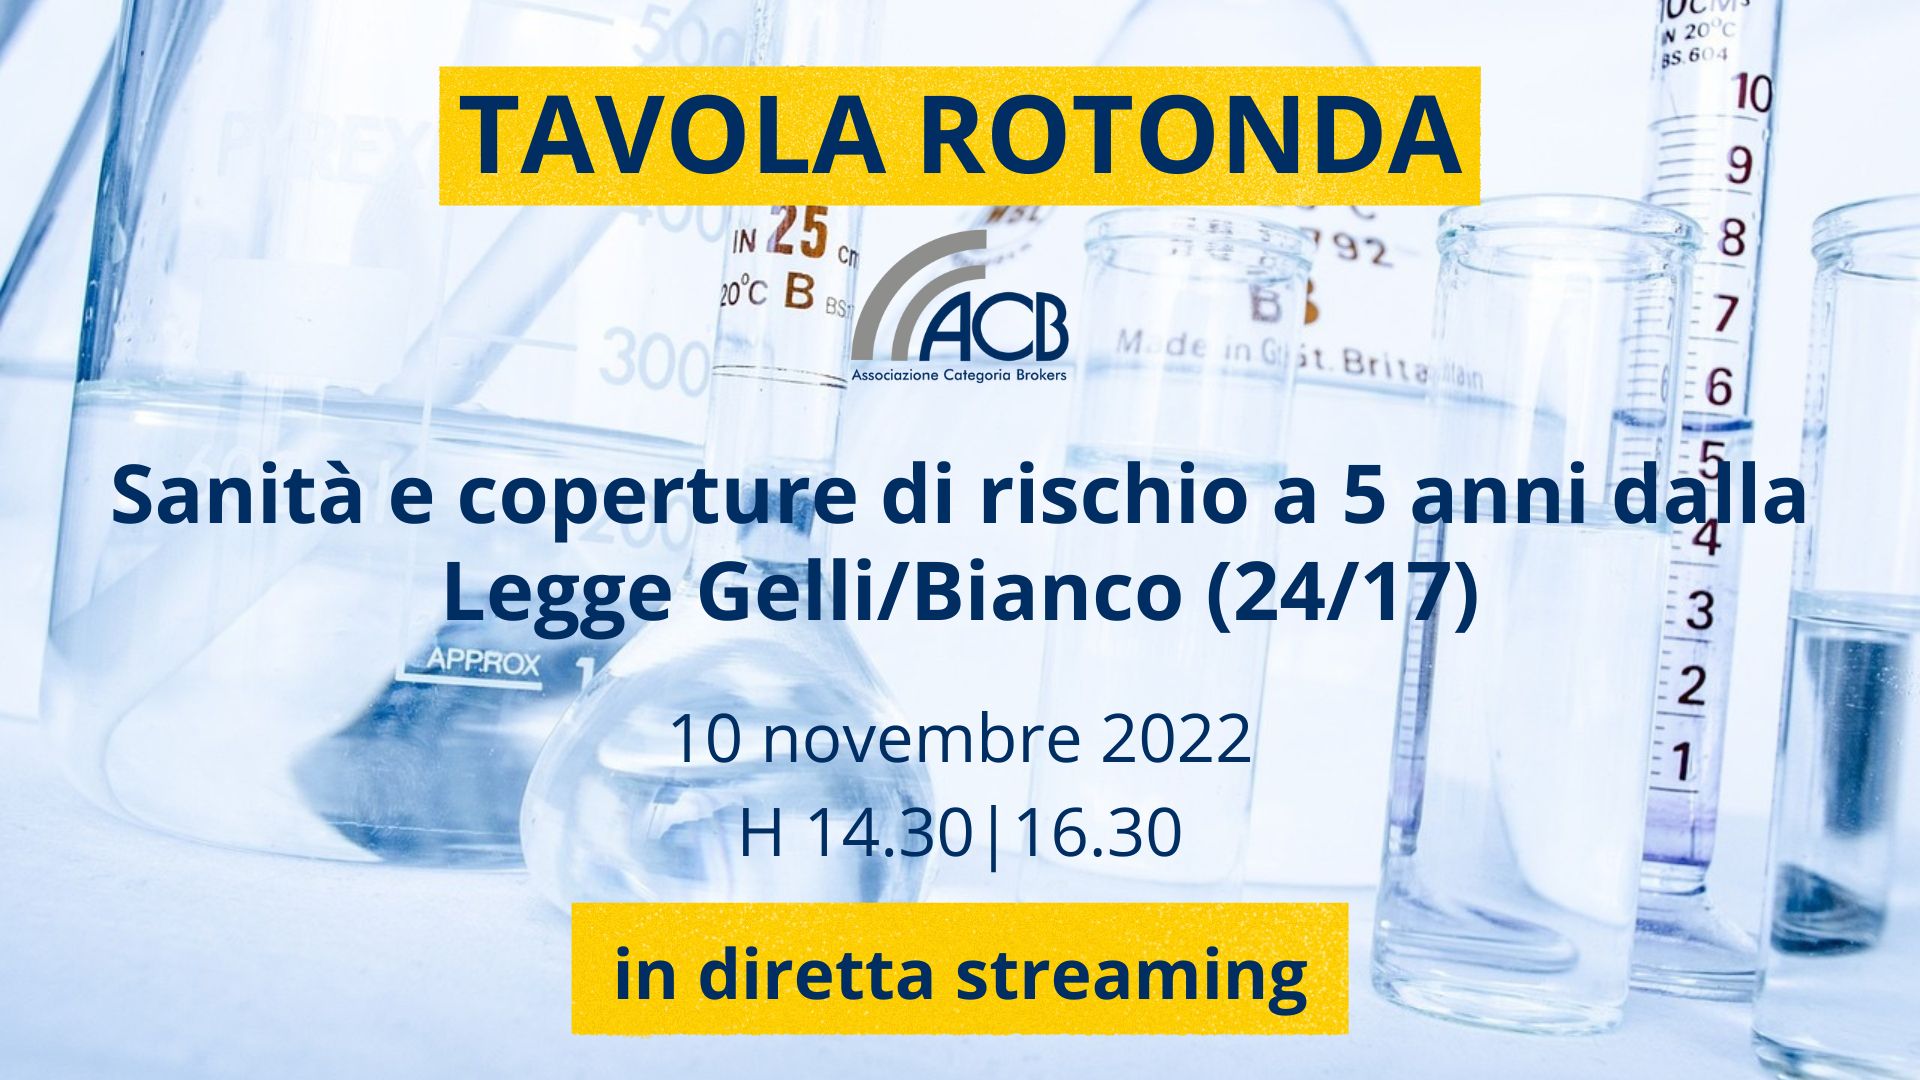 TAVOLA ROTONDA ACB | SANITA' E COPERTURE DI RISCHIO A 5 ANNI DALLA LEGGE GELLI/BIANCO (24/17) |10 NOVEMBRE '22 H14.30|16.30